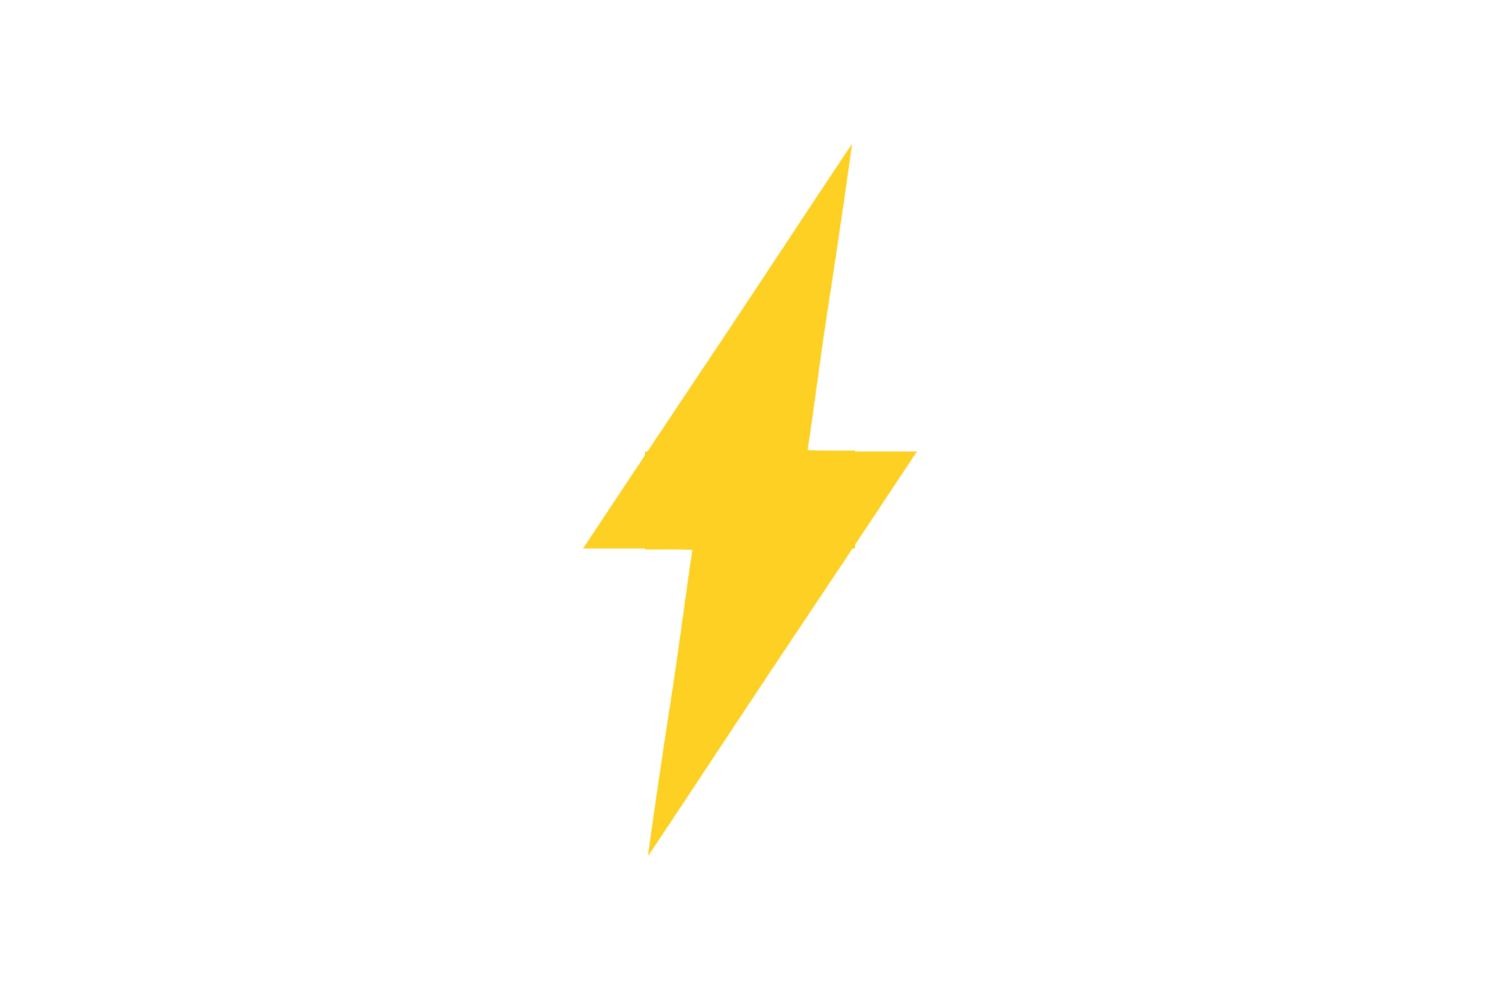 Lightning bolt SVG Free Download